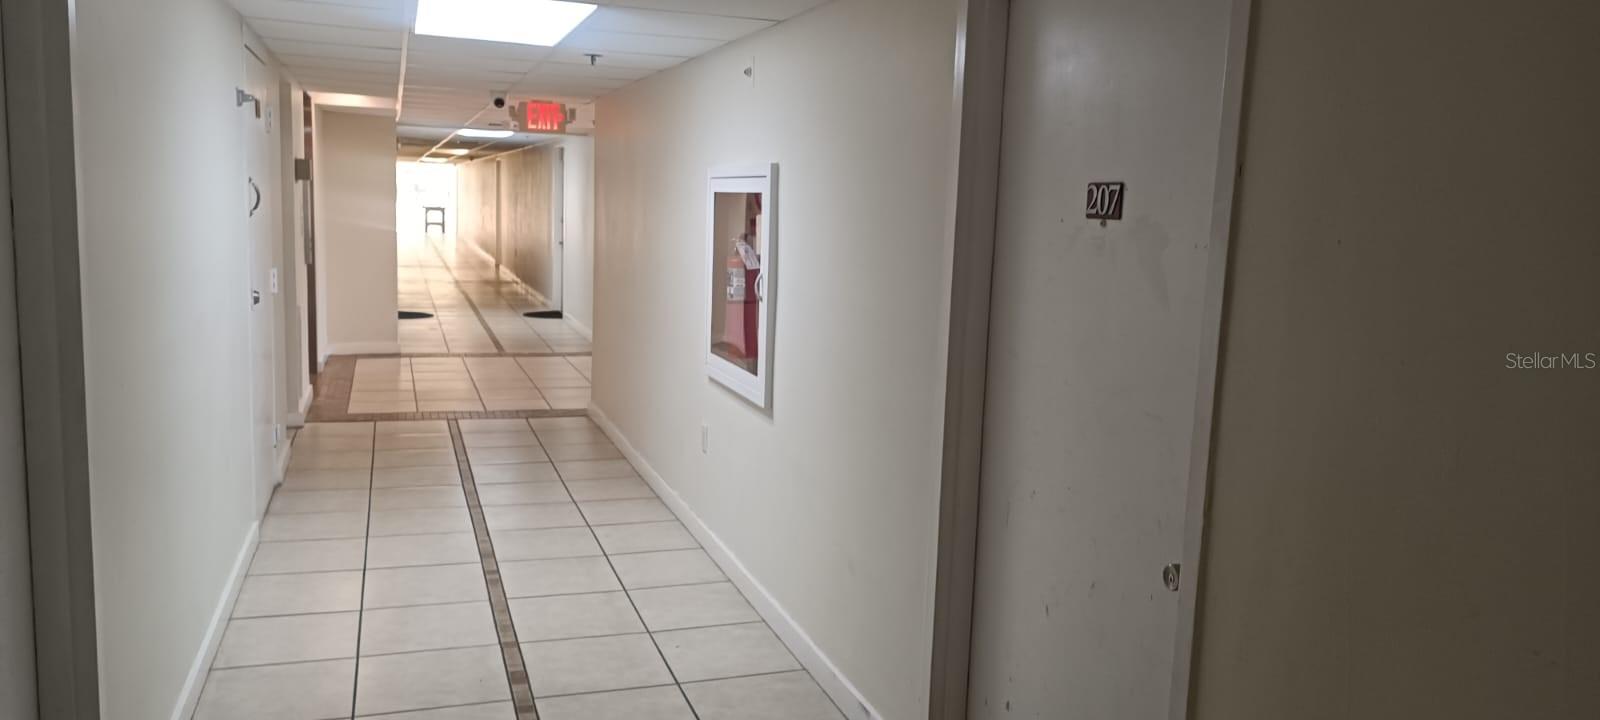 External hallway